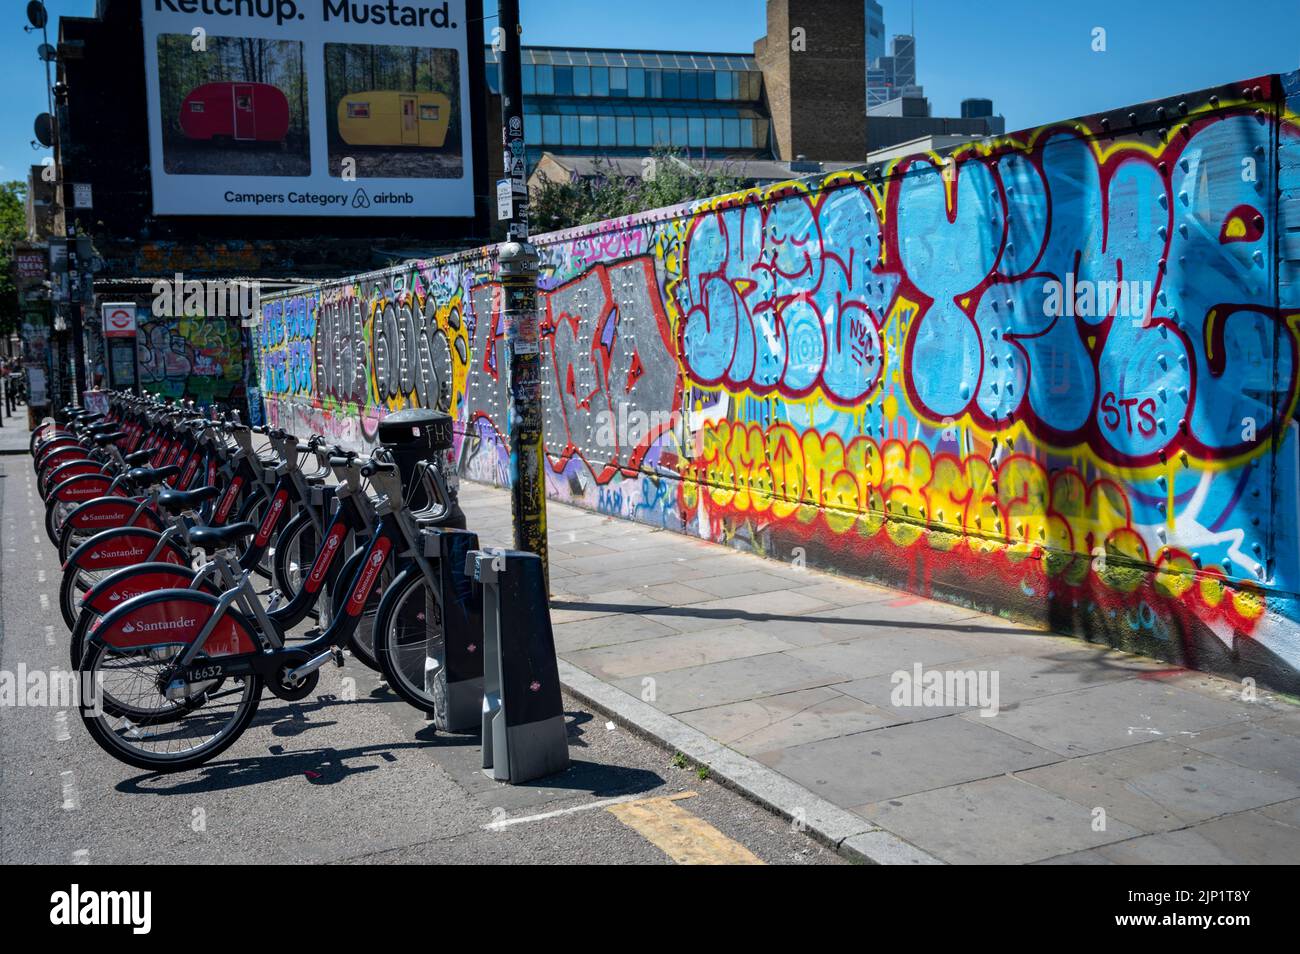 Santander mietet Fahrräder, die in einem Fahrradständer in Brick Lane London, Großbritannien, geparkt sind Stockfoto